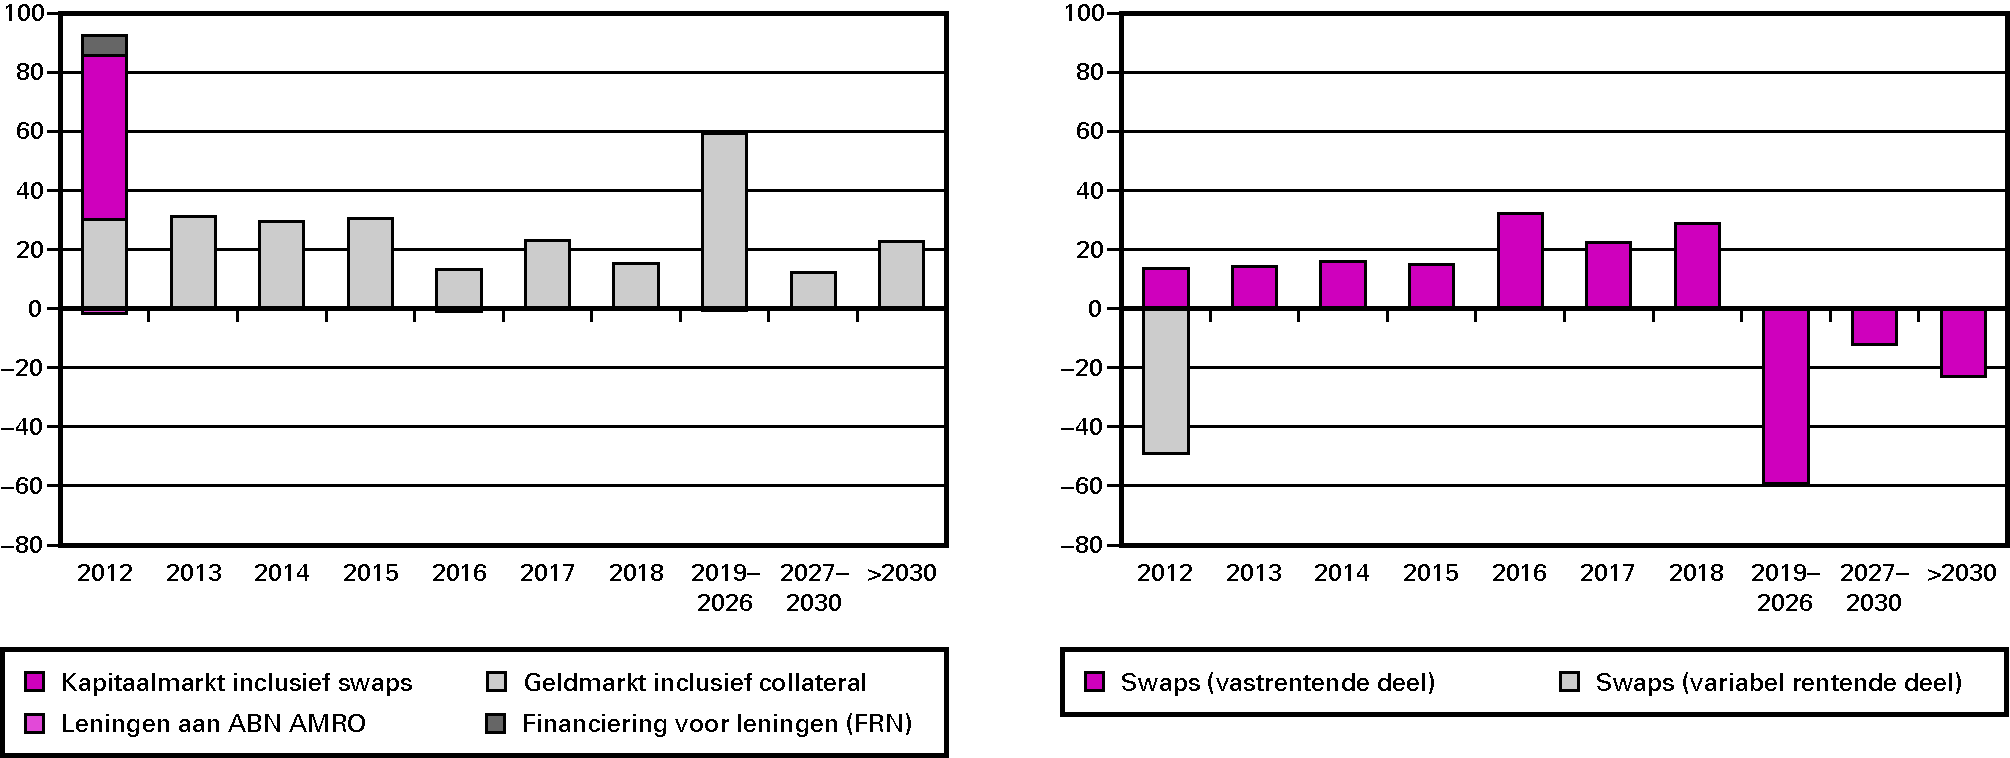 Figuur 2a: Risico als gevolg van uitgifte van leningen ultimo 2011 (in € mld.) (links) en figuur 2b: Bijsturing door de swapportefeuille ultimo 2011 (in € mld.)